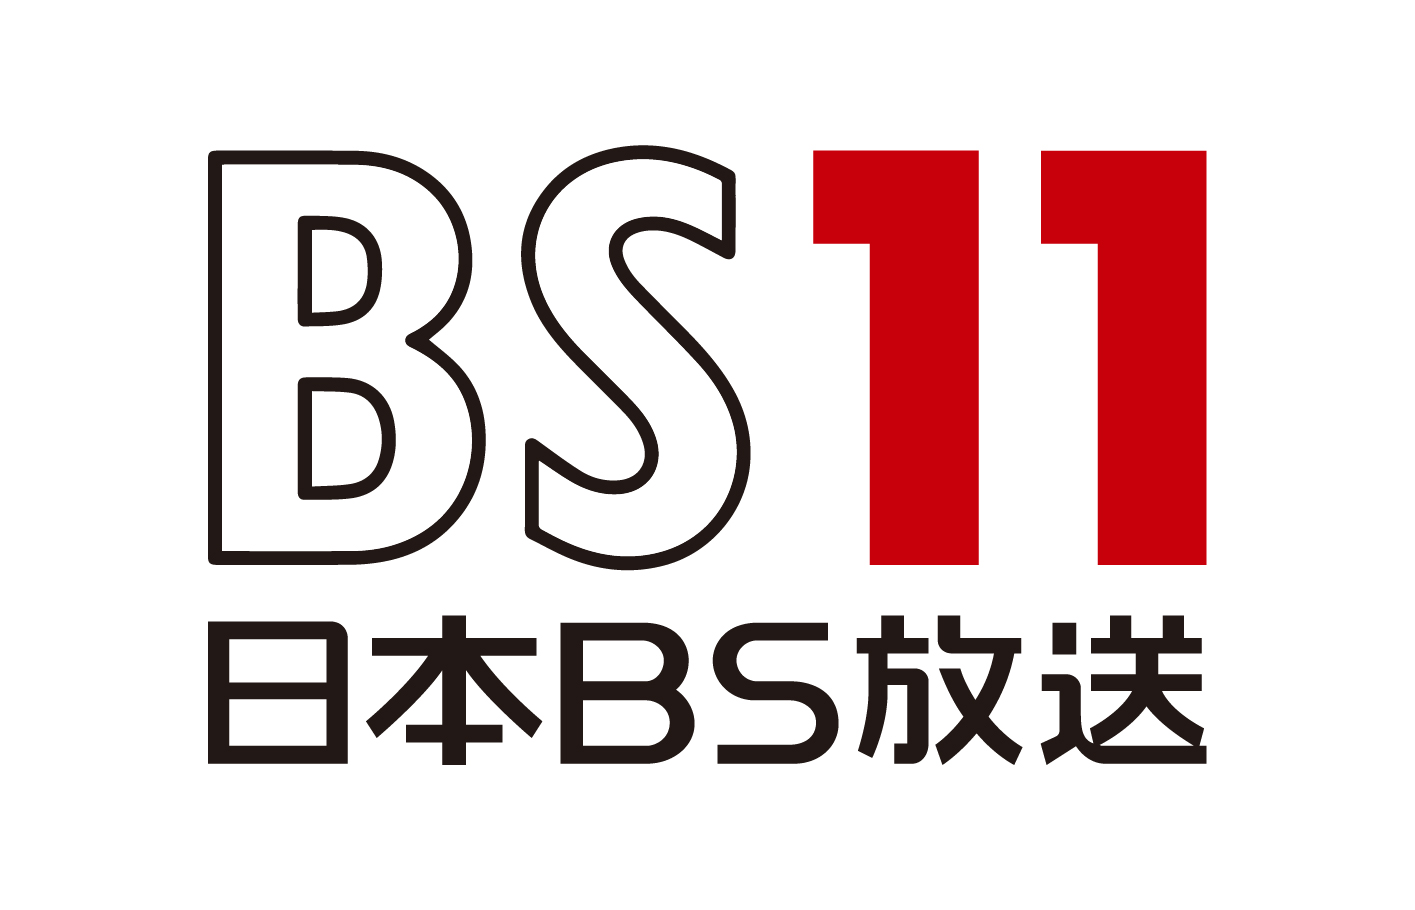 BS11ロゴ